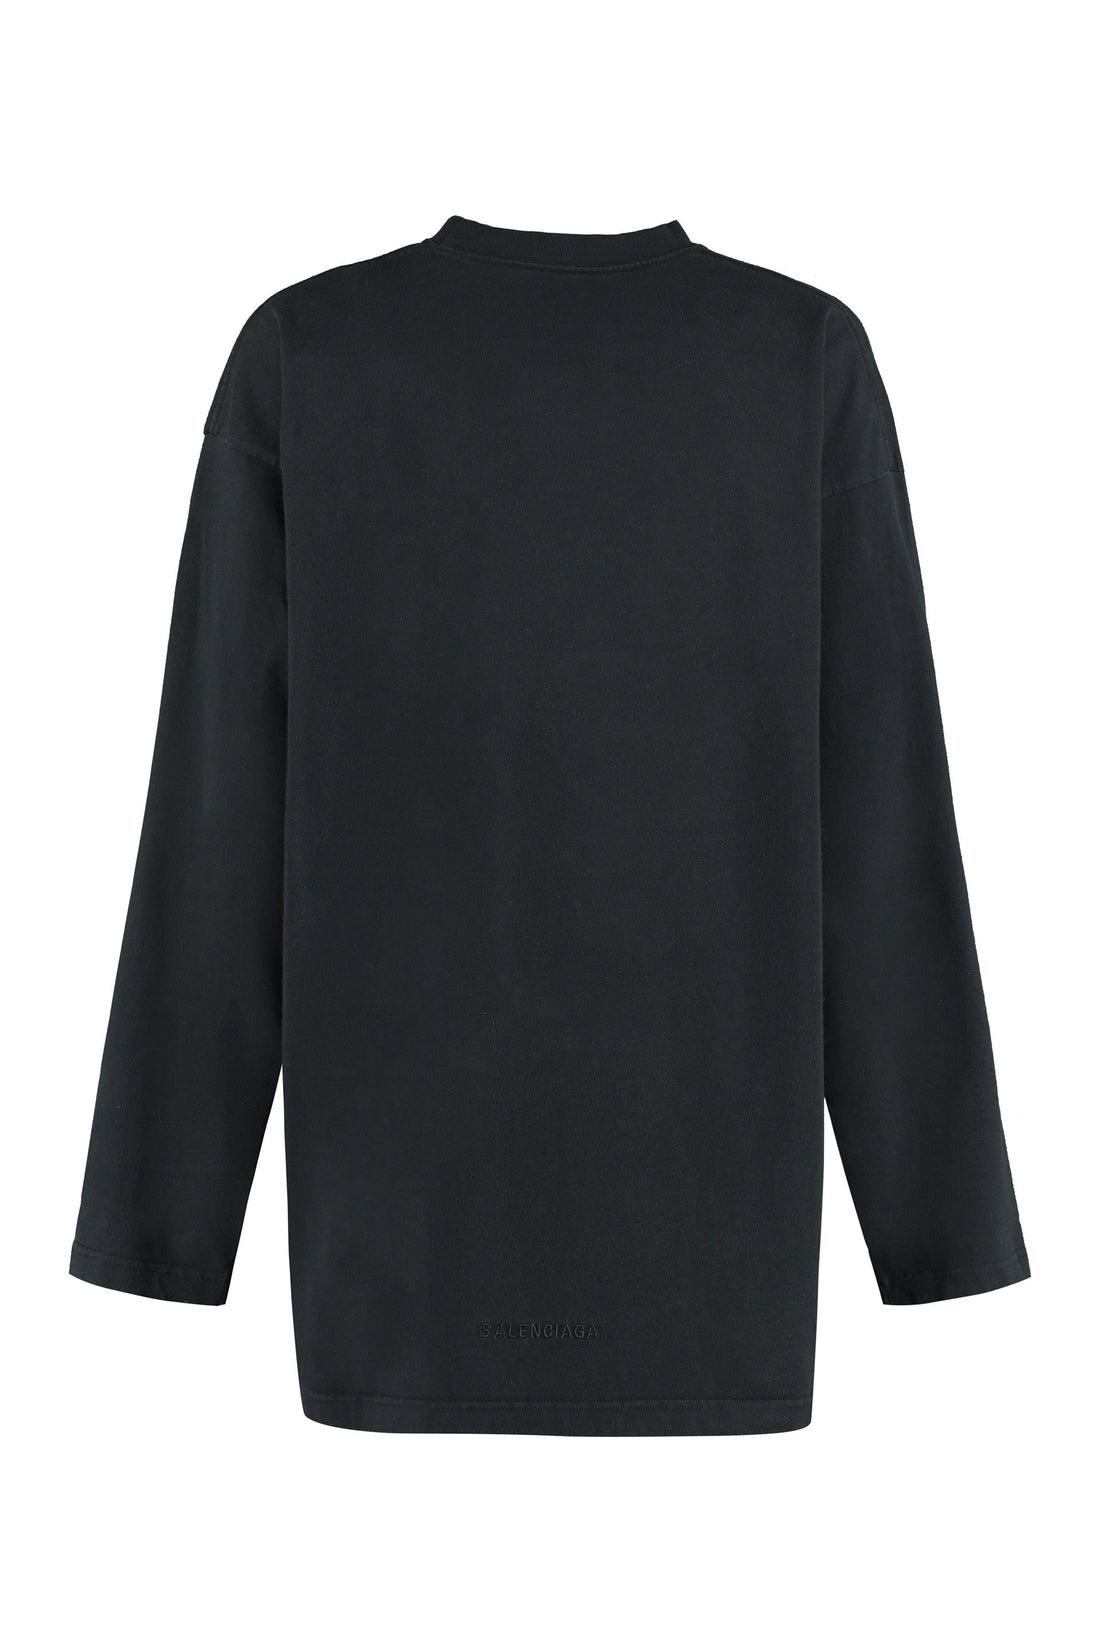 Balenciaga-OUTLET-SALE-Printed cotton T-shirt-ARCHIVIST